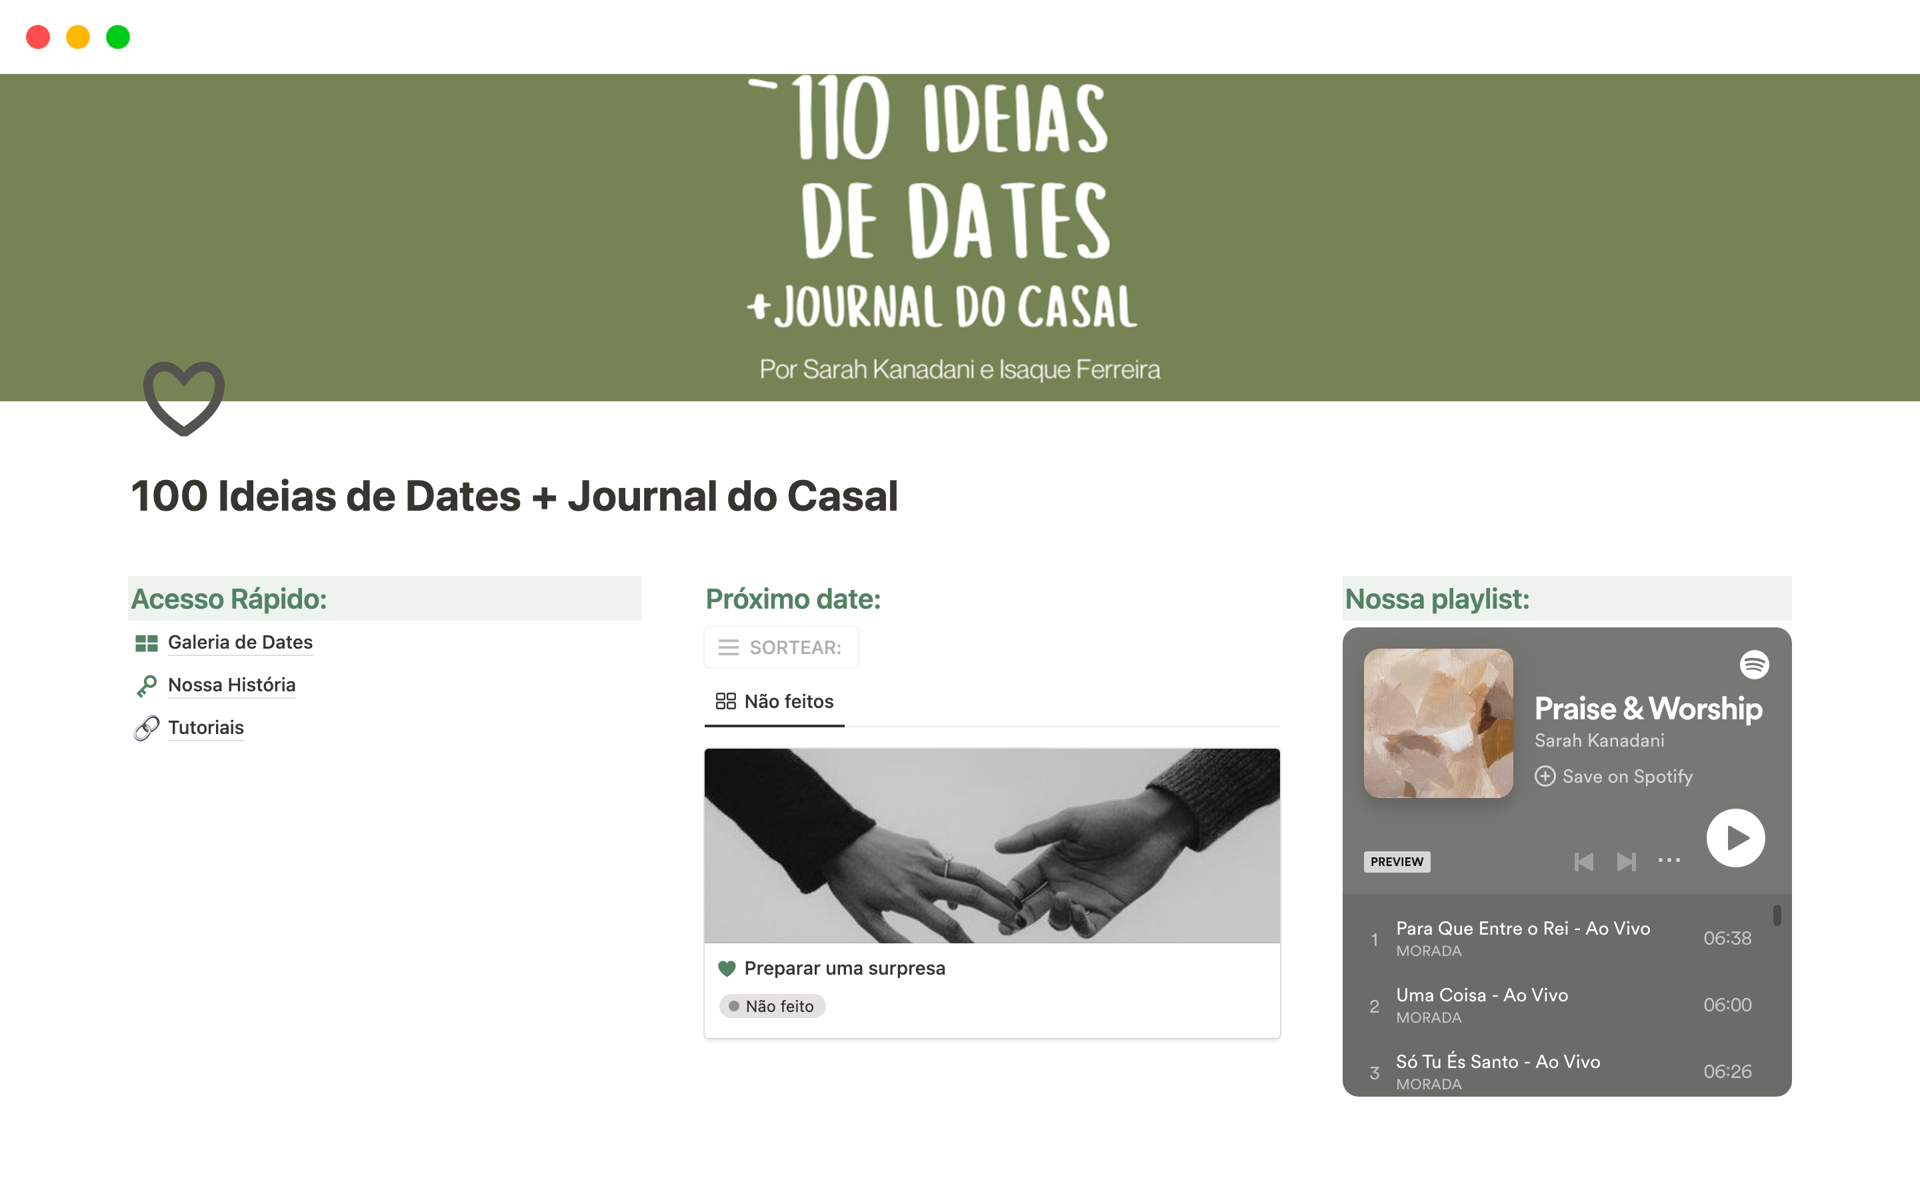 Uma prévia do modelo para 100 Ideias de Dates + Journal do Casal 